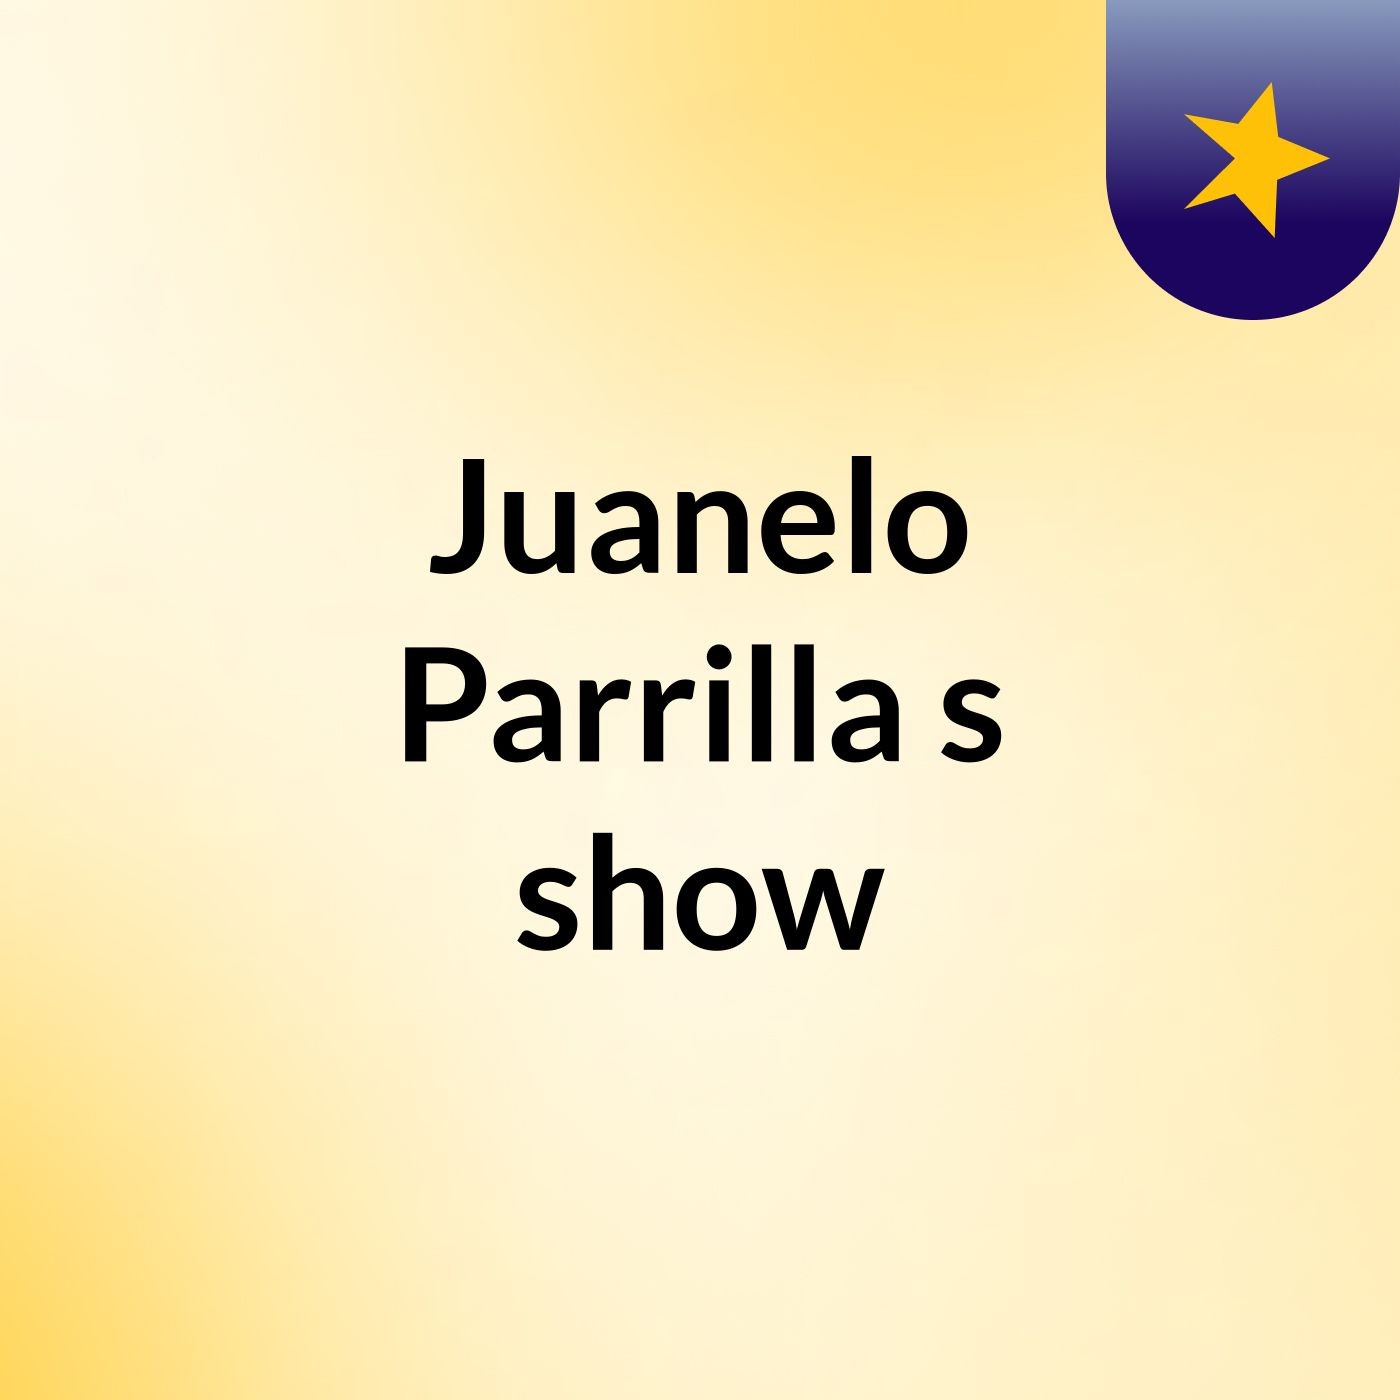 Juanelo Parrilla's show